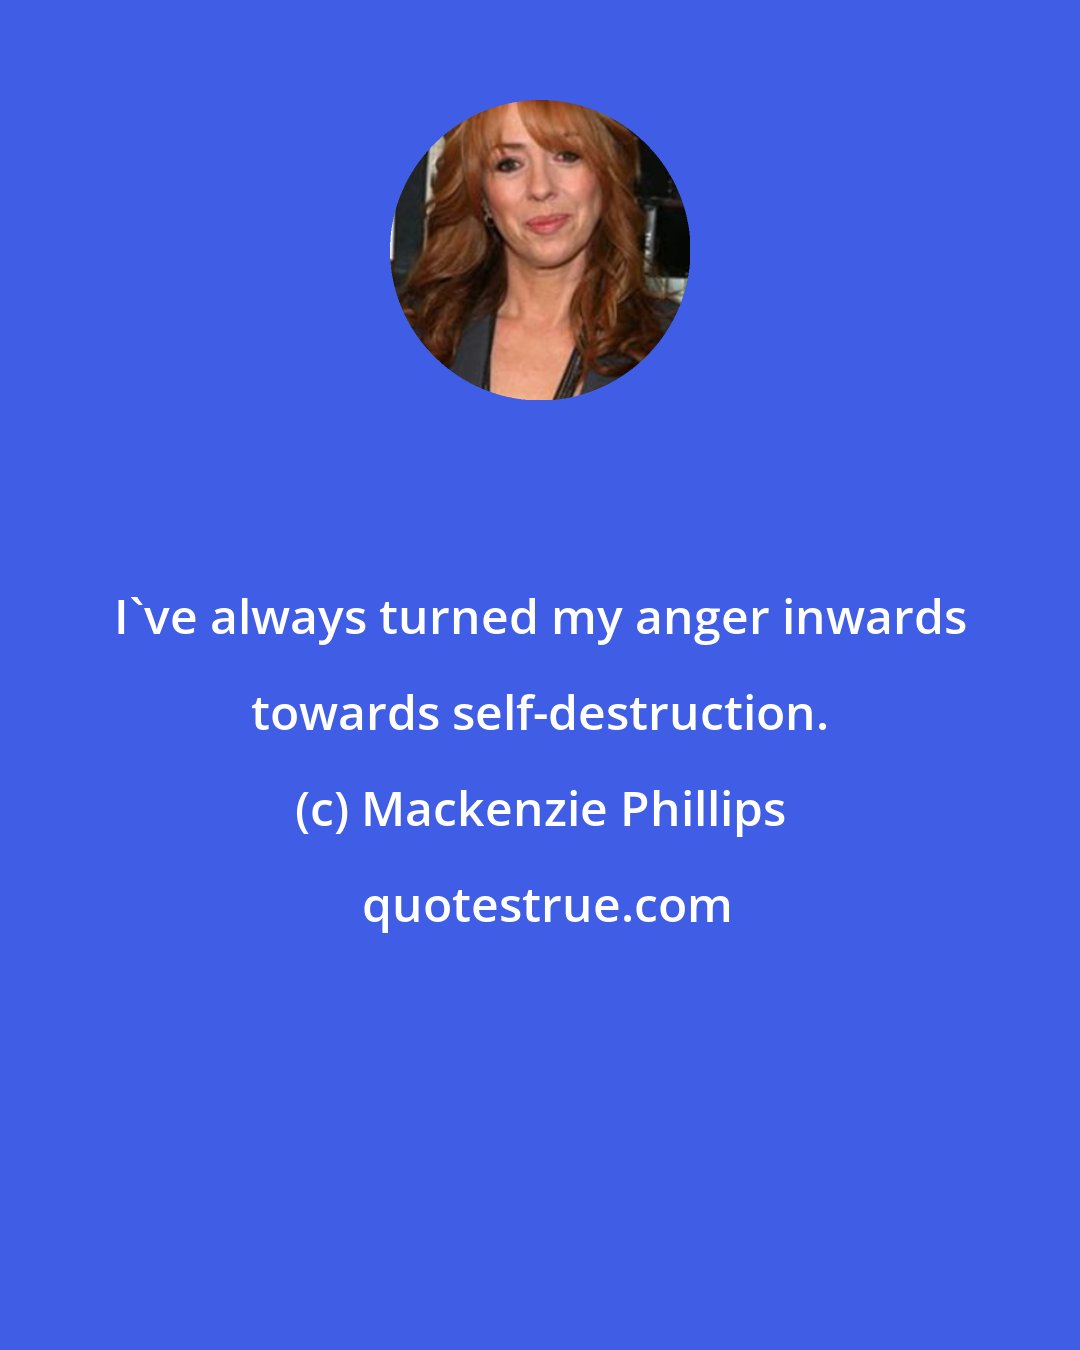 Mackenzie Phillips: I've always turned my anger inwards towards self-destruction.